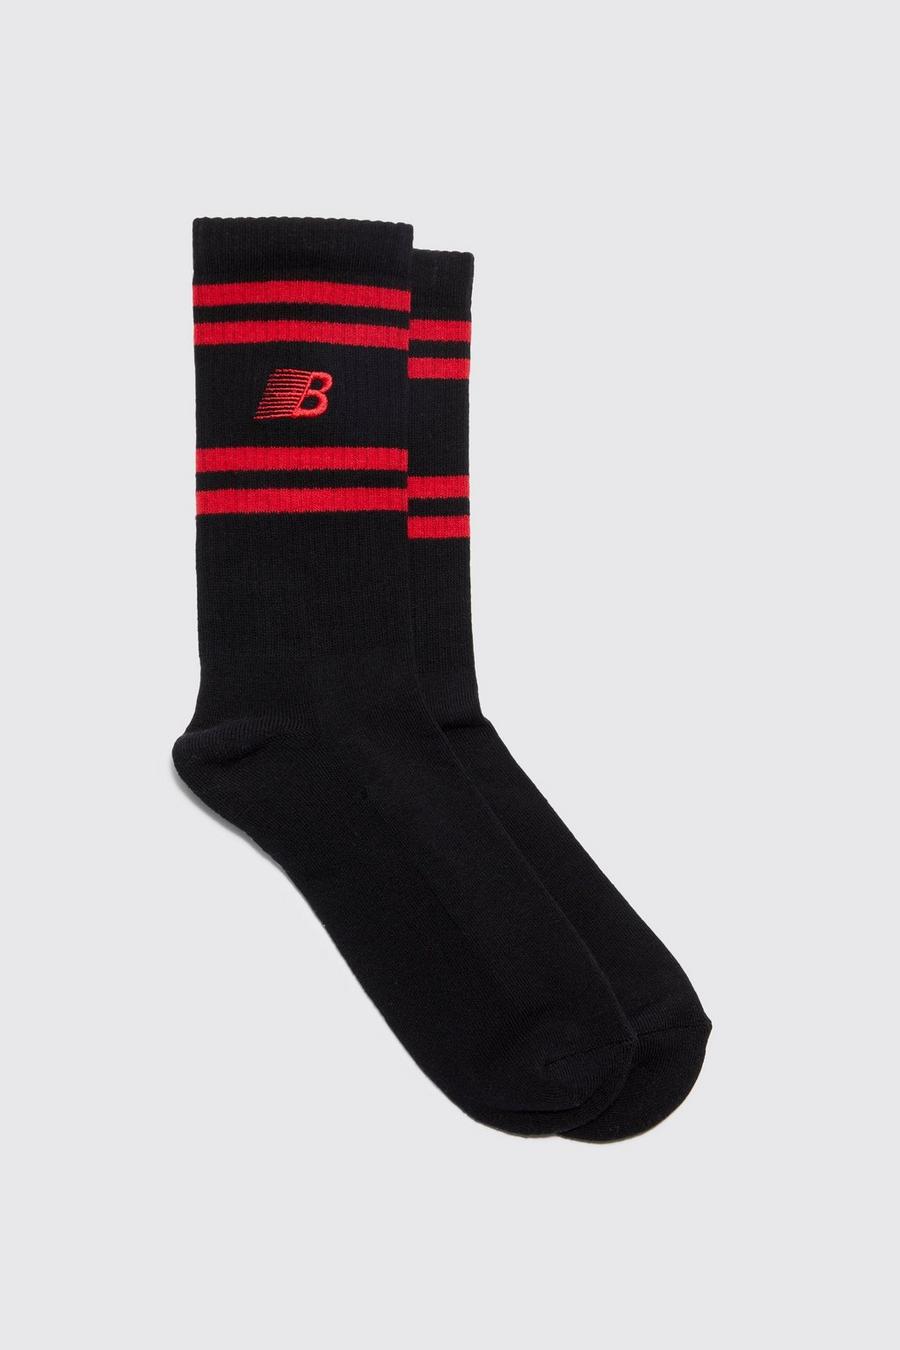 Gestreifte Socken mit B-Stickerei, Black